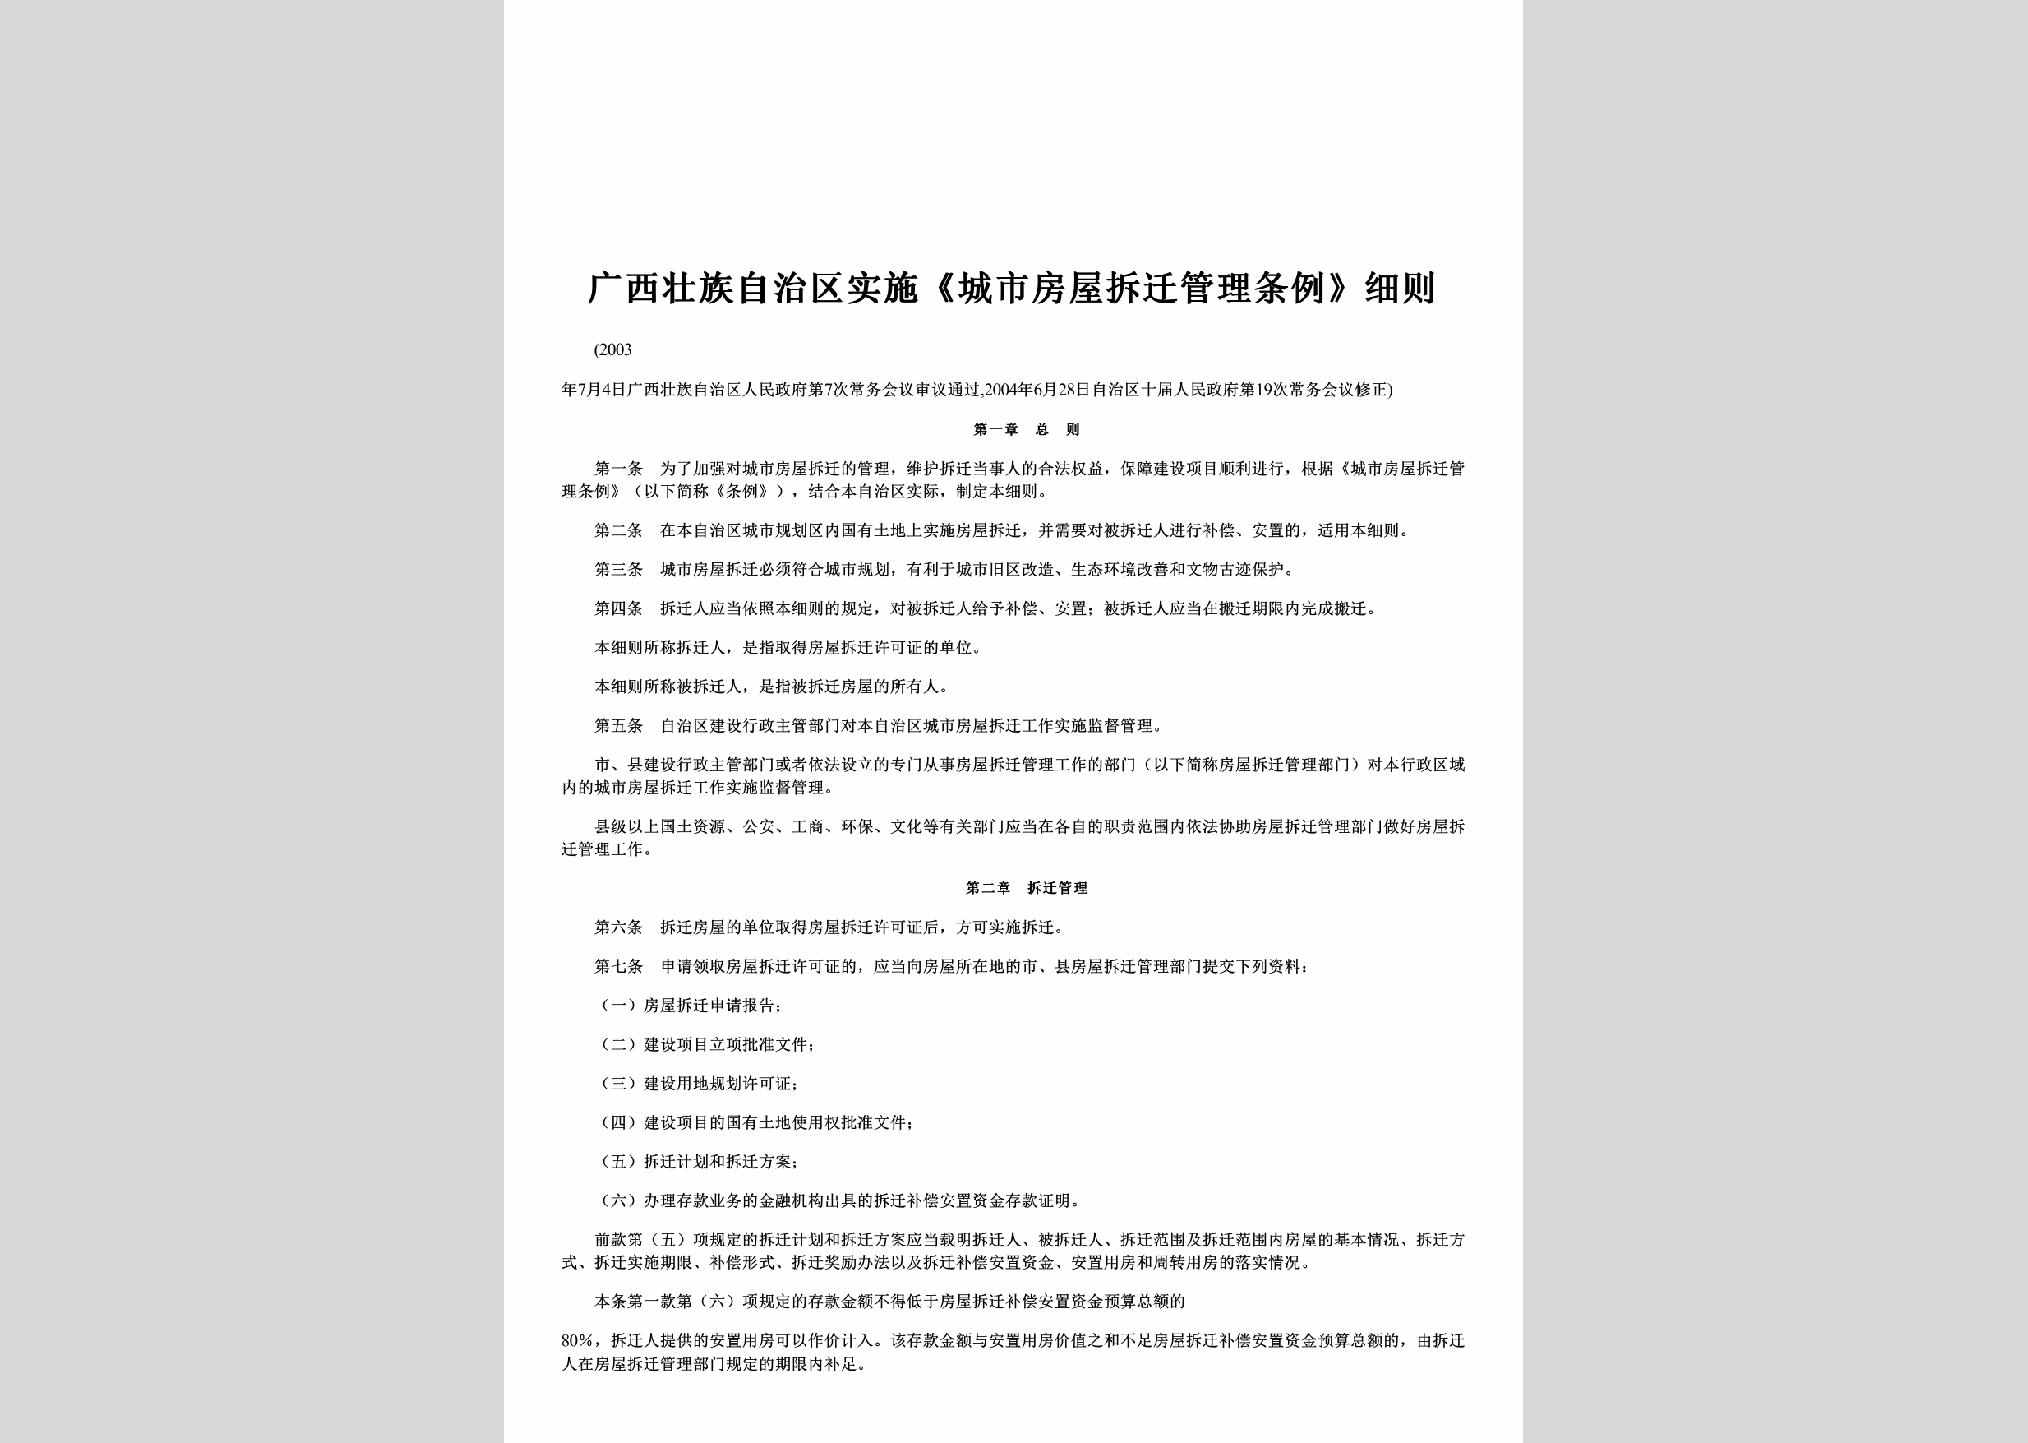 GX-FWCQGLTL-2003：广西壮族自治区实施《城市房屋拆迁管理条例》细则